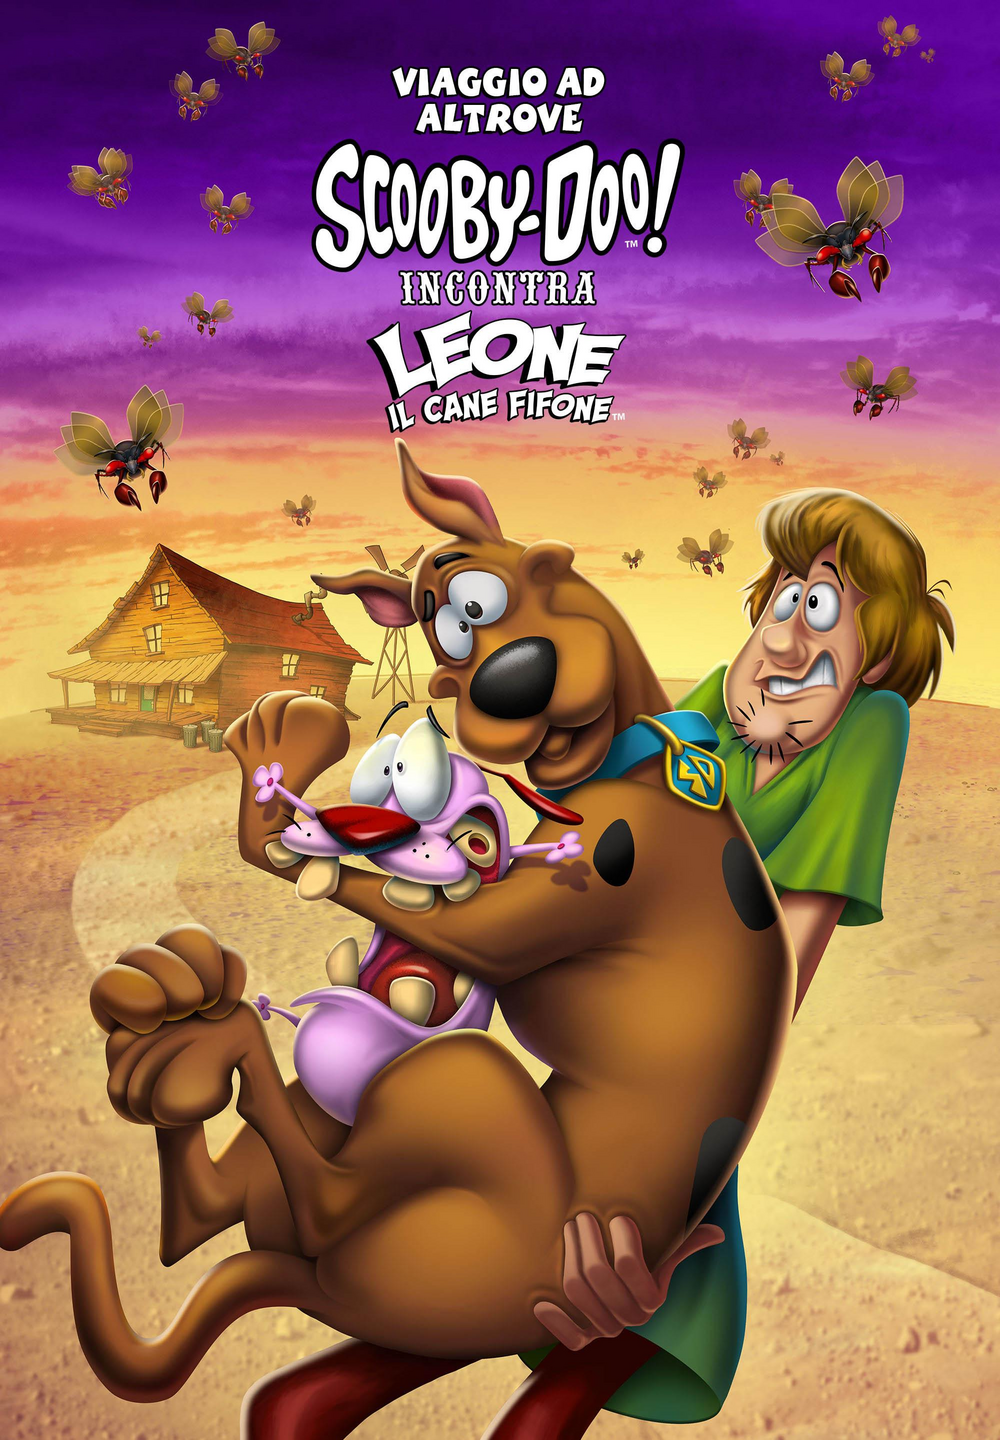 Viaggio ad Altrove: Scooby-Doo! incontra Leone il Cane Fifone [HD] (2021)